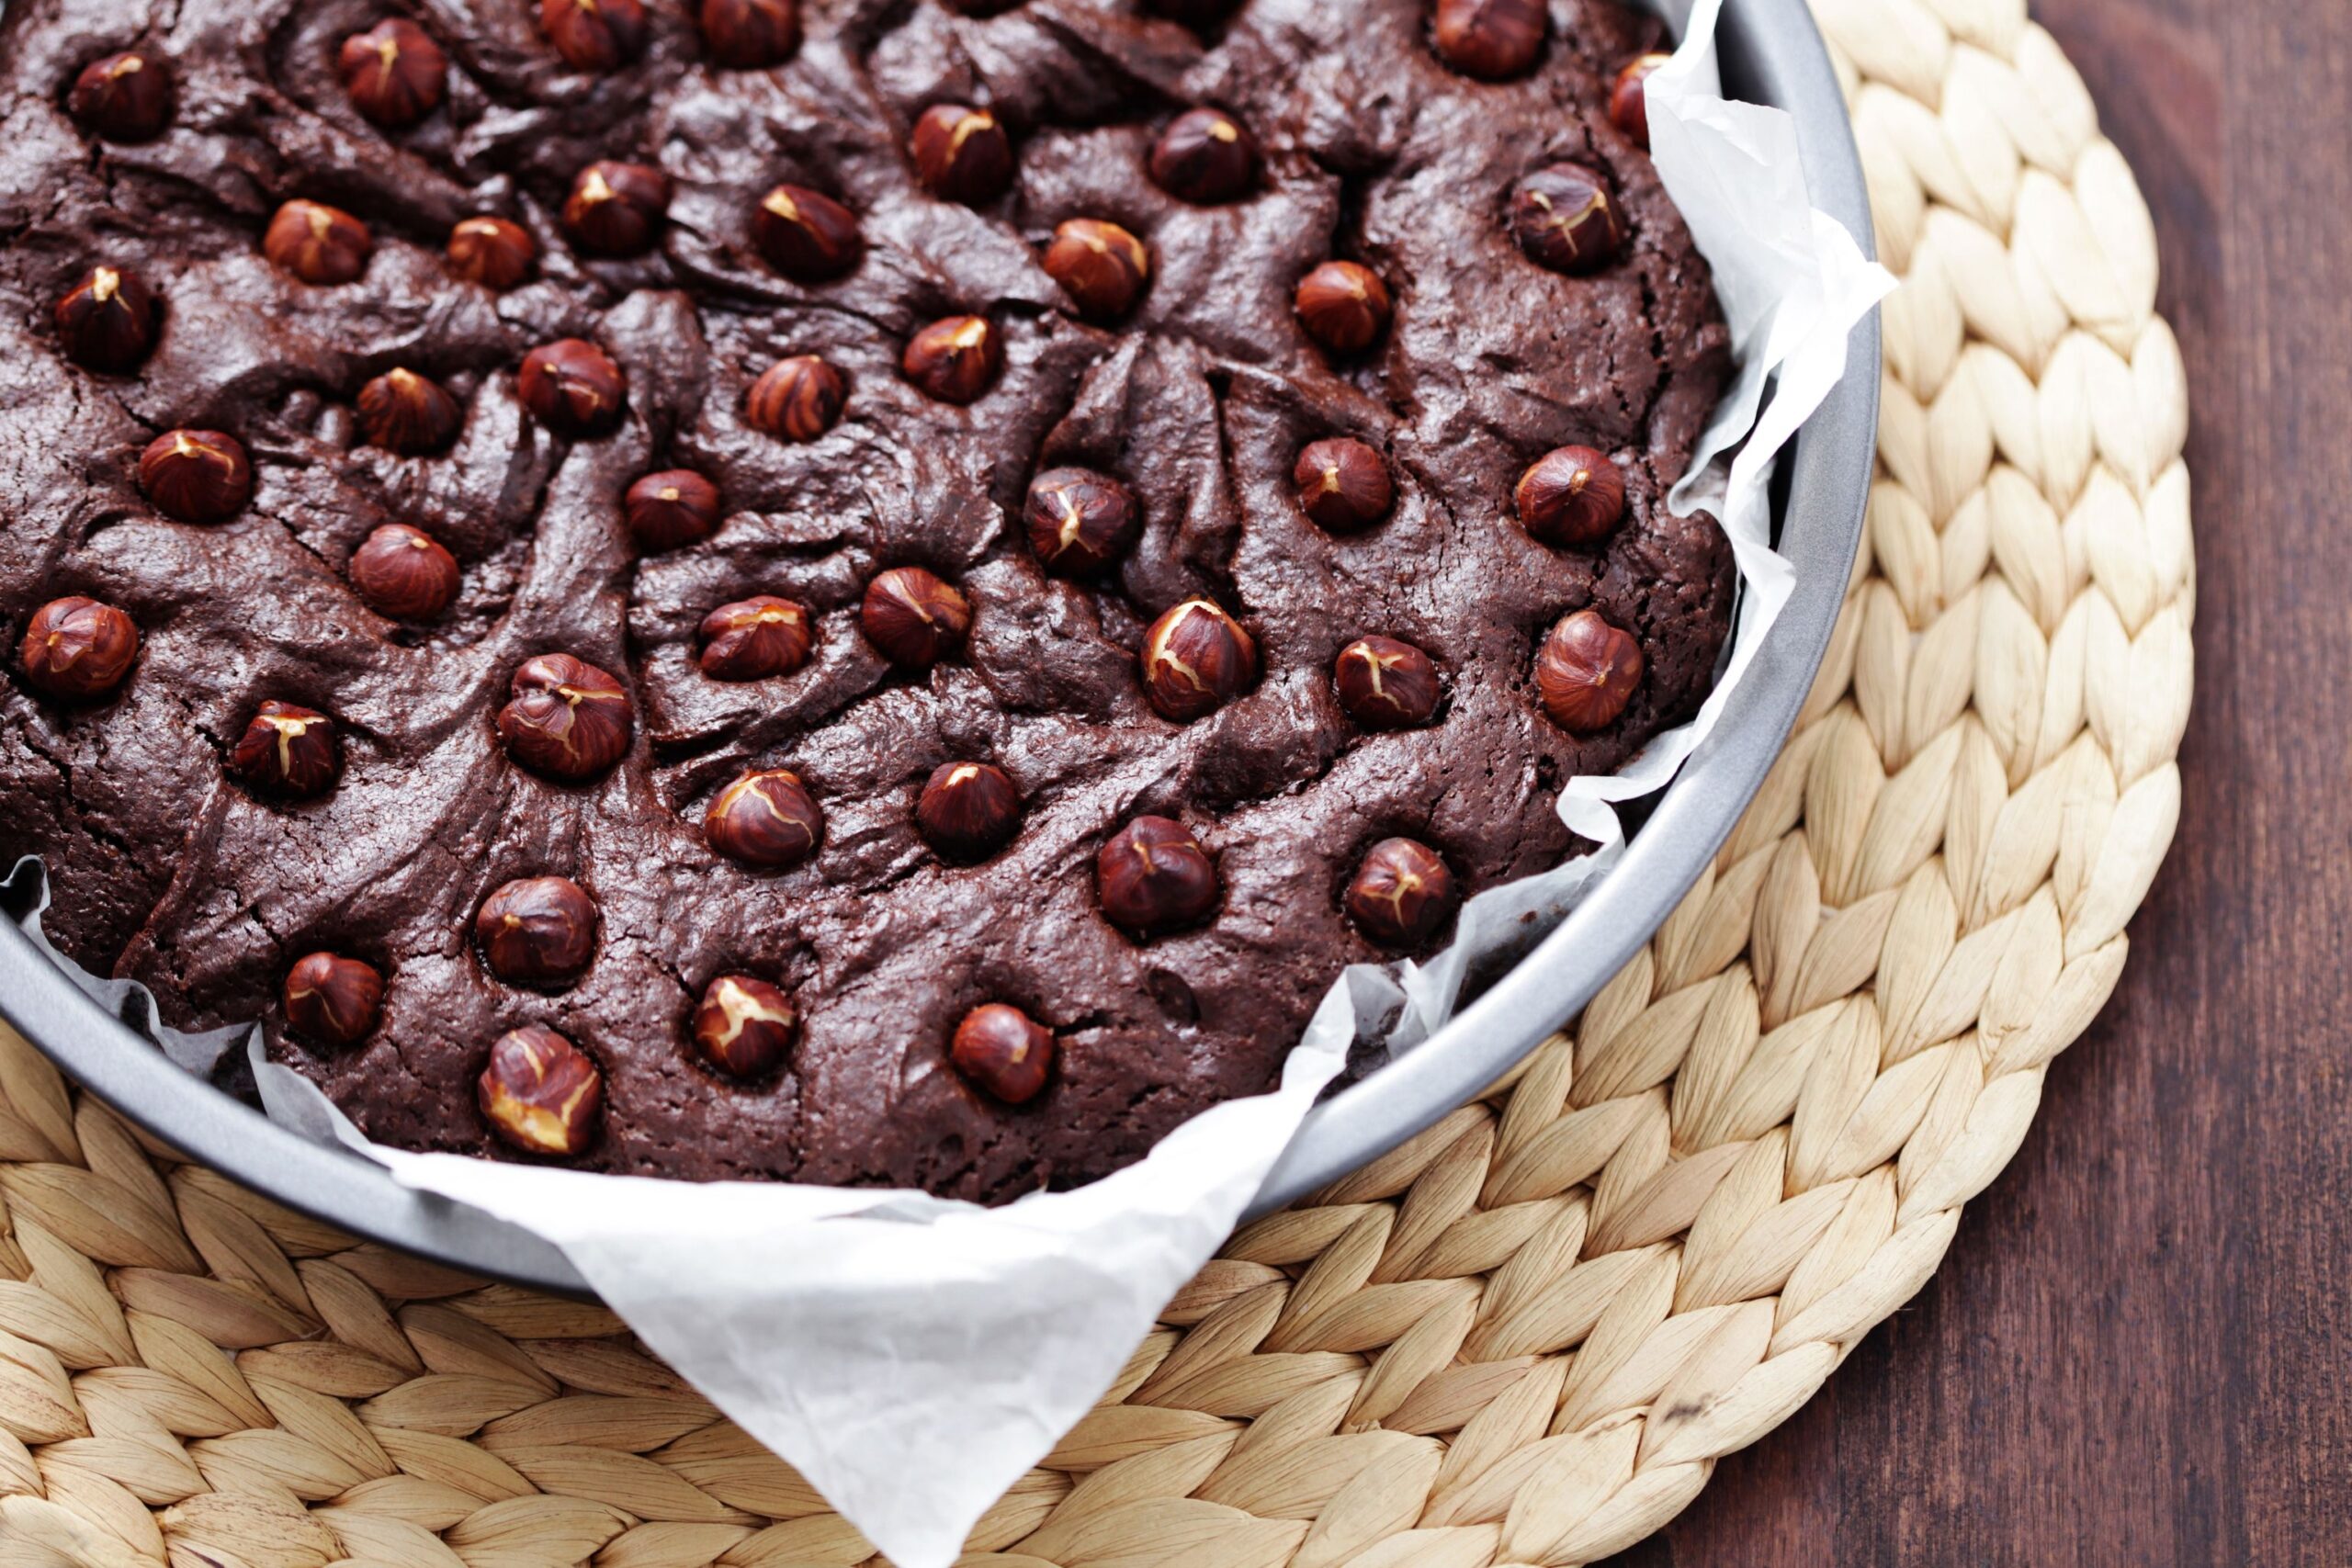 Torta cioccolato e nocciole: inevitabilmente irresistibile!